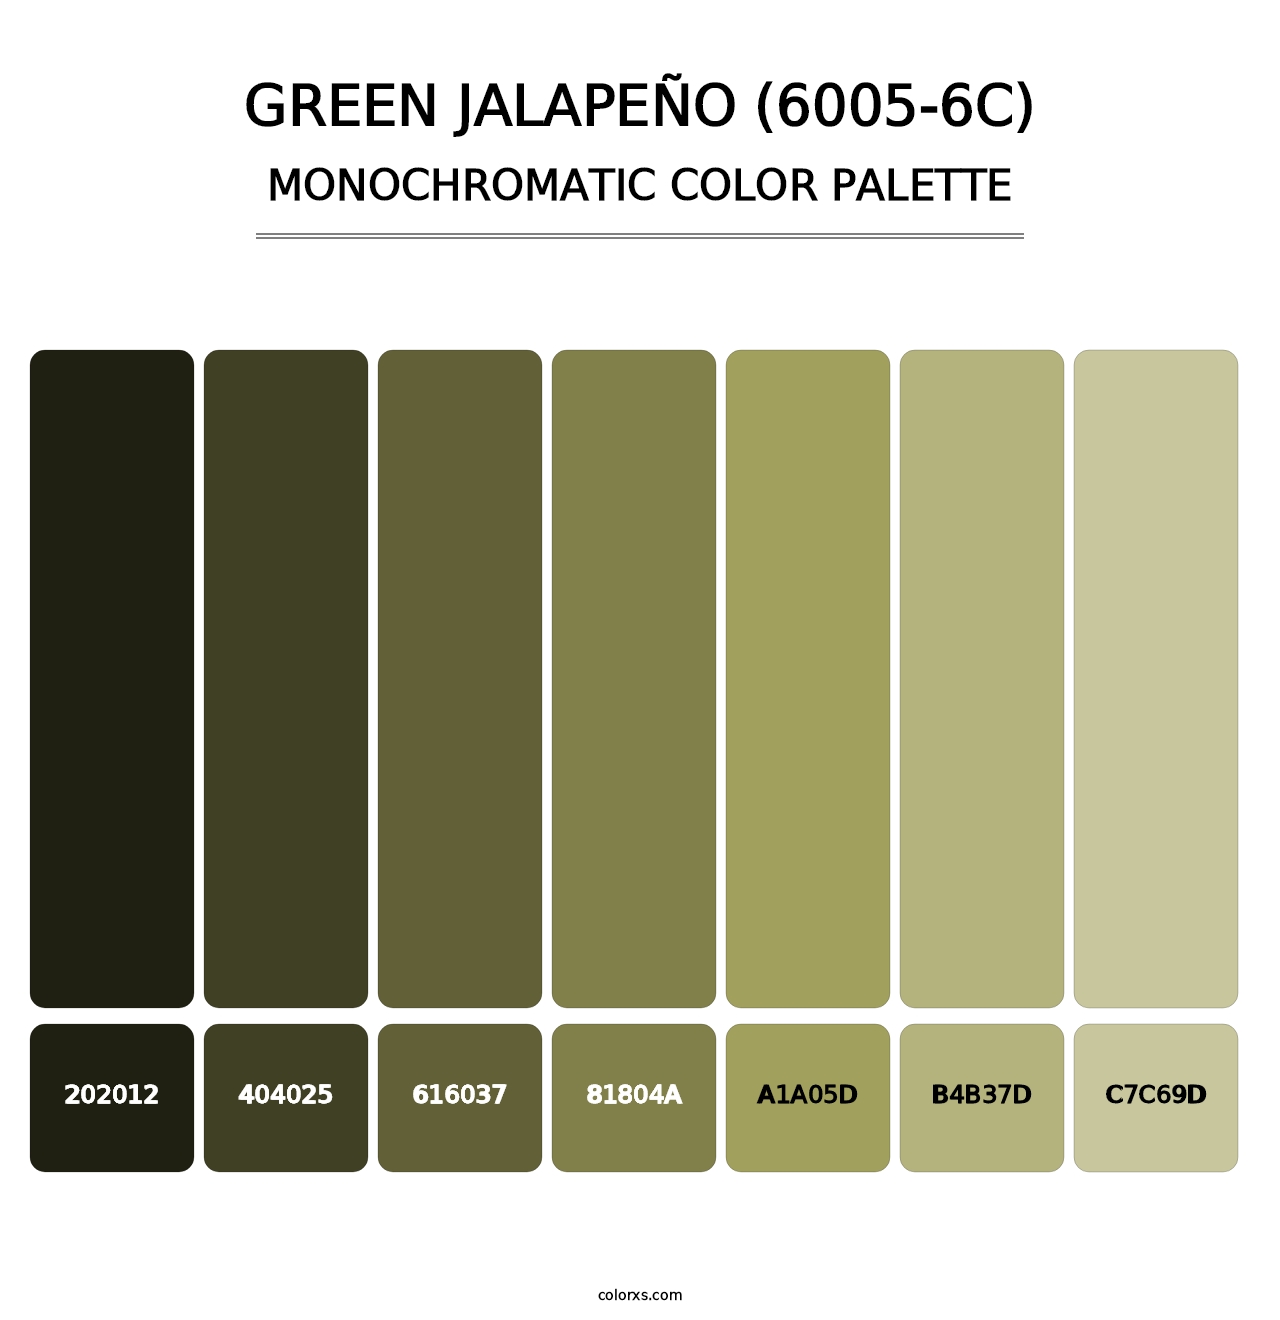 Green Jalapeño (6005-6C) - Monochromatic Color Palette